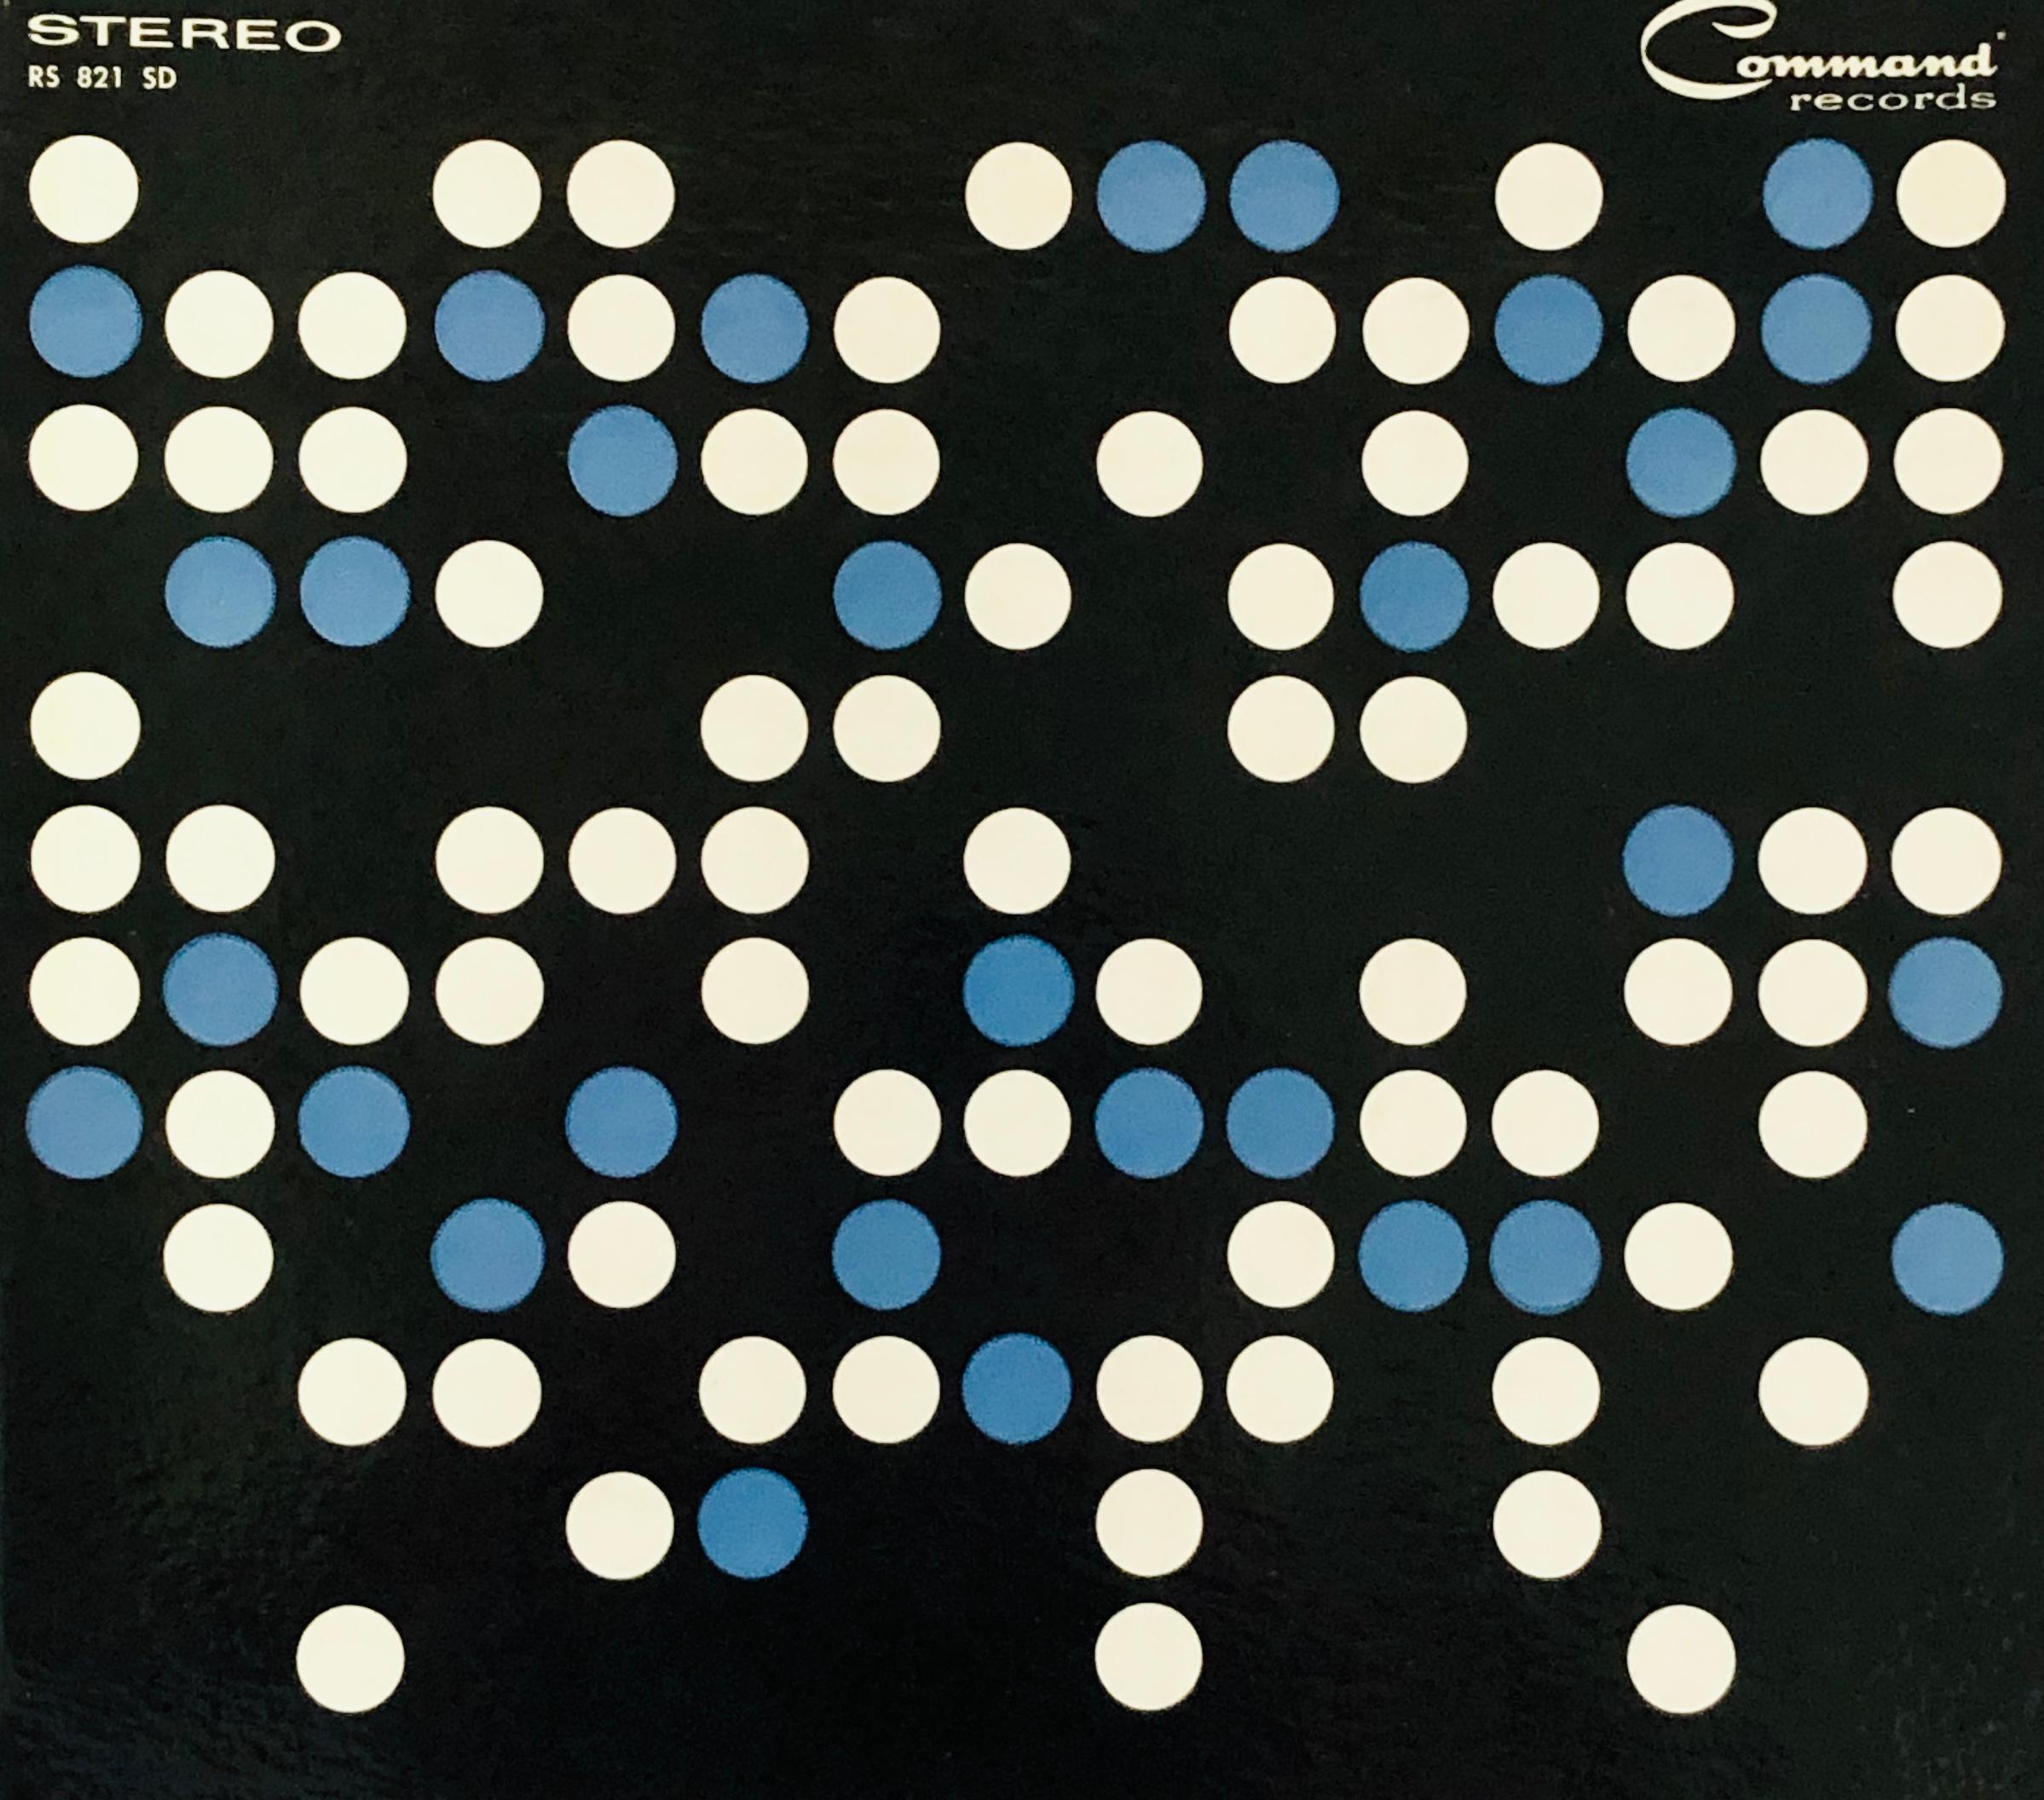 Josef Albers vinyl record art (1950s Albers)  - Art by (after) Josef Albers